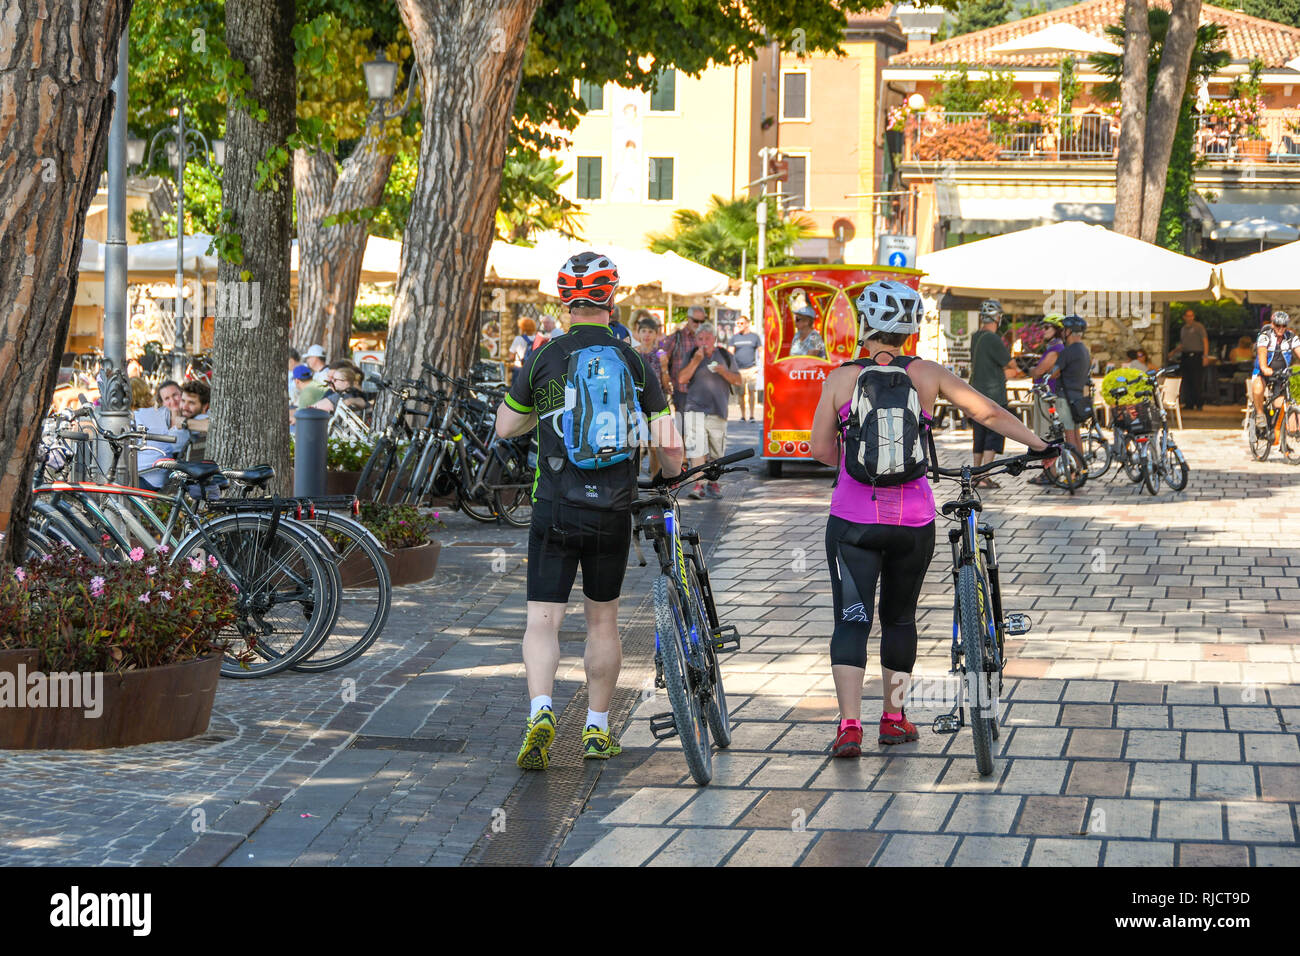 GARDA, ITALY - SEPTEMBER 2018: Cyclists wheeling their bikes through Garda on Lake Garda. Stock Photo